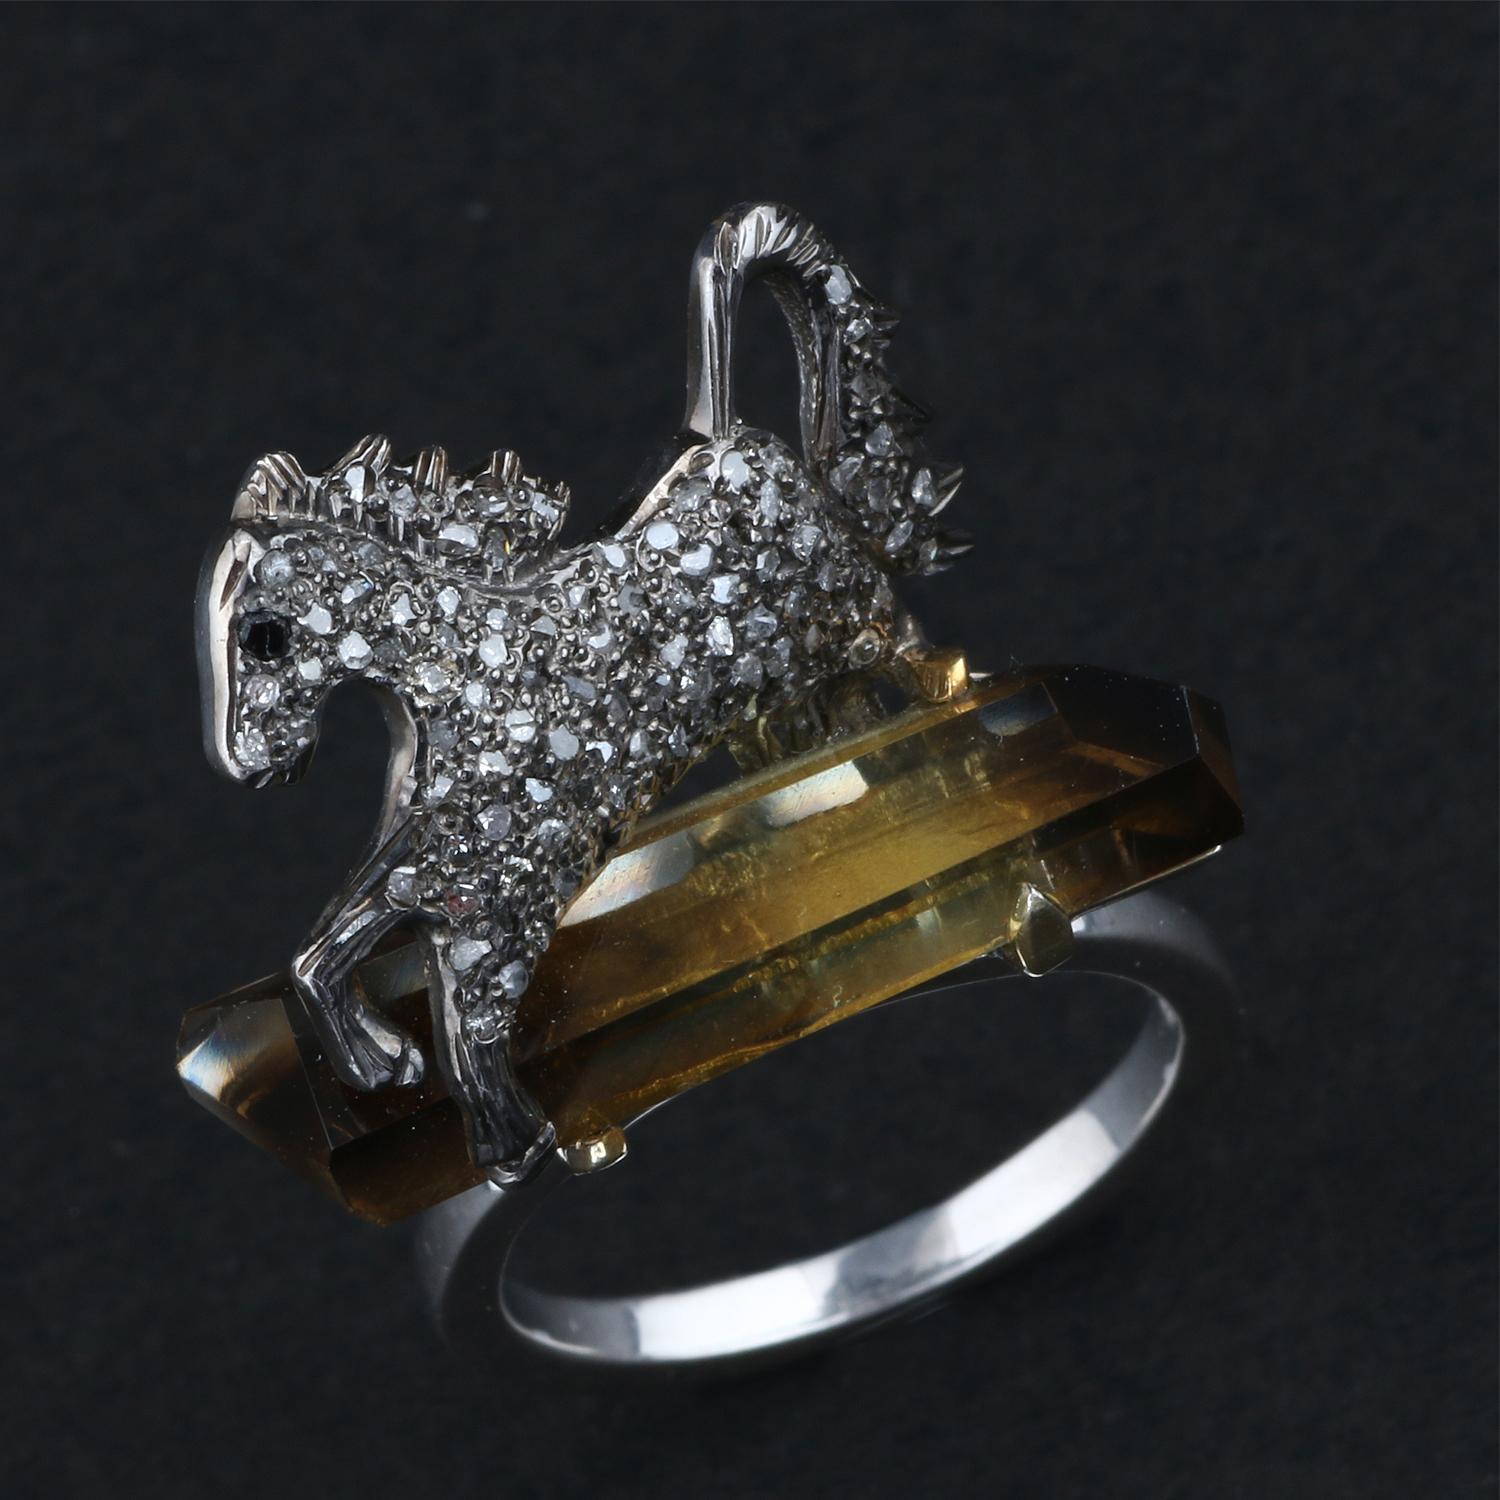 Détails de l'article:-

✦ SKU:- ESRG00185

✦ Material :- Silver
✦ Gemstone Specification:-
✧ Diamant
✧ Tourmaline

✦ Approx. Poids du diamant : 0,55
✦ Approx. Argent Poids : 5.45
✦ Approx. Poids brut : 7,35

Taille de la bague (US) : 7

Vous